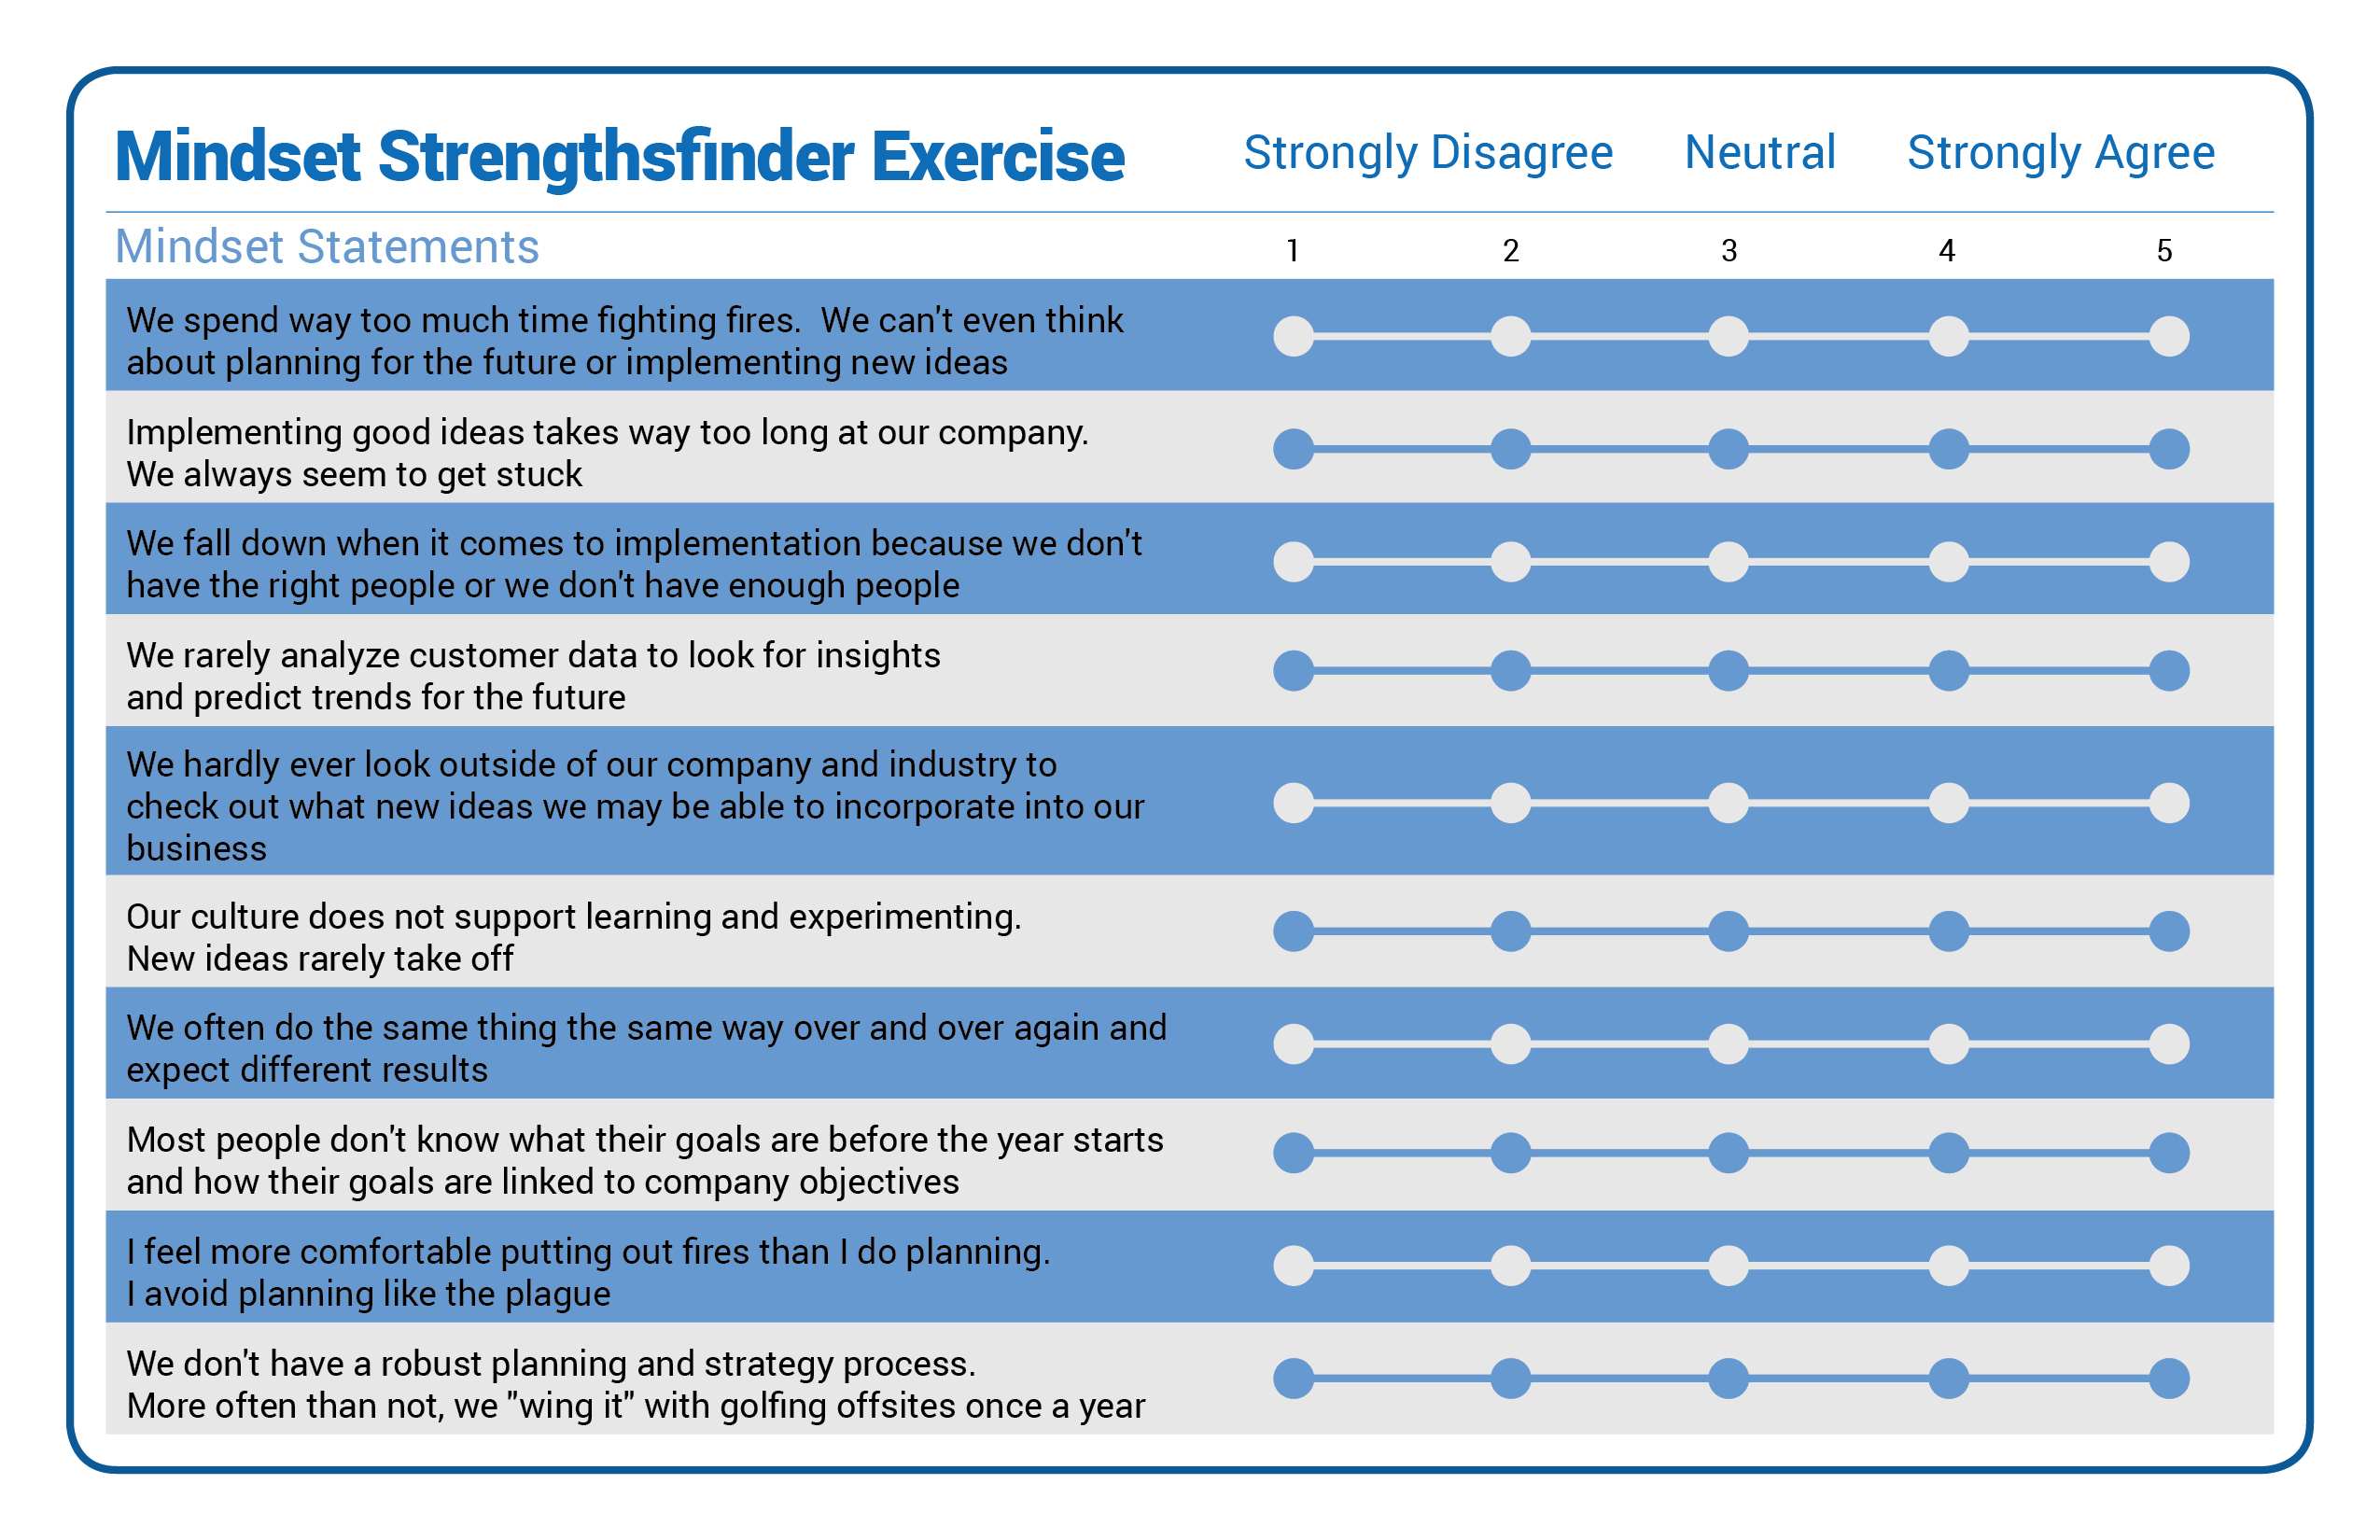 Mindset_Strengthsfinder_Exercise